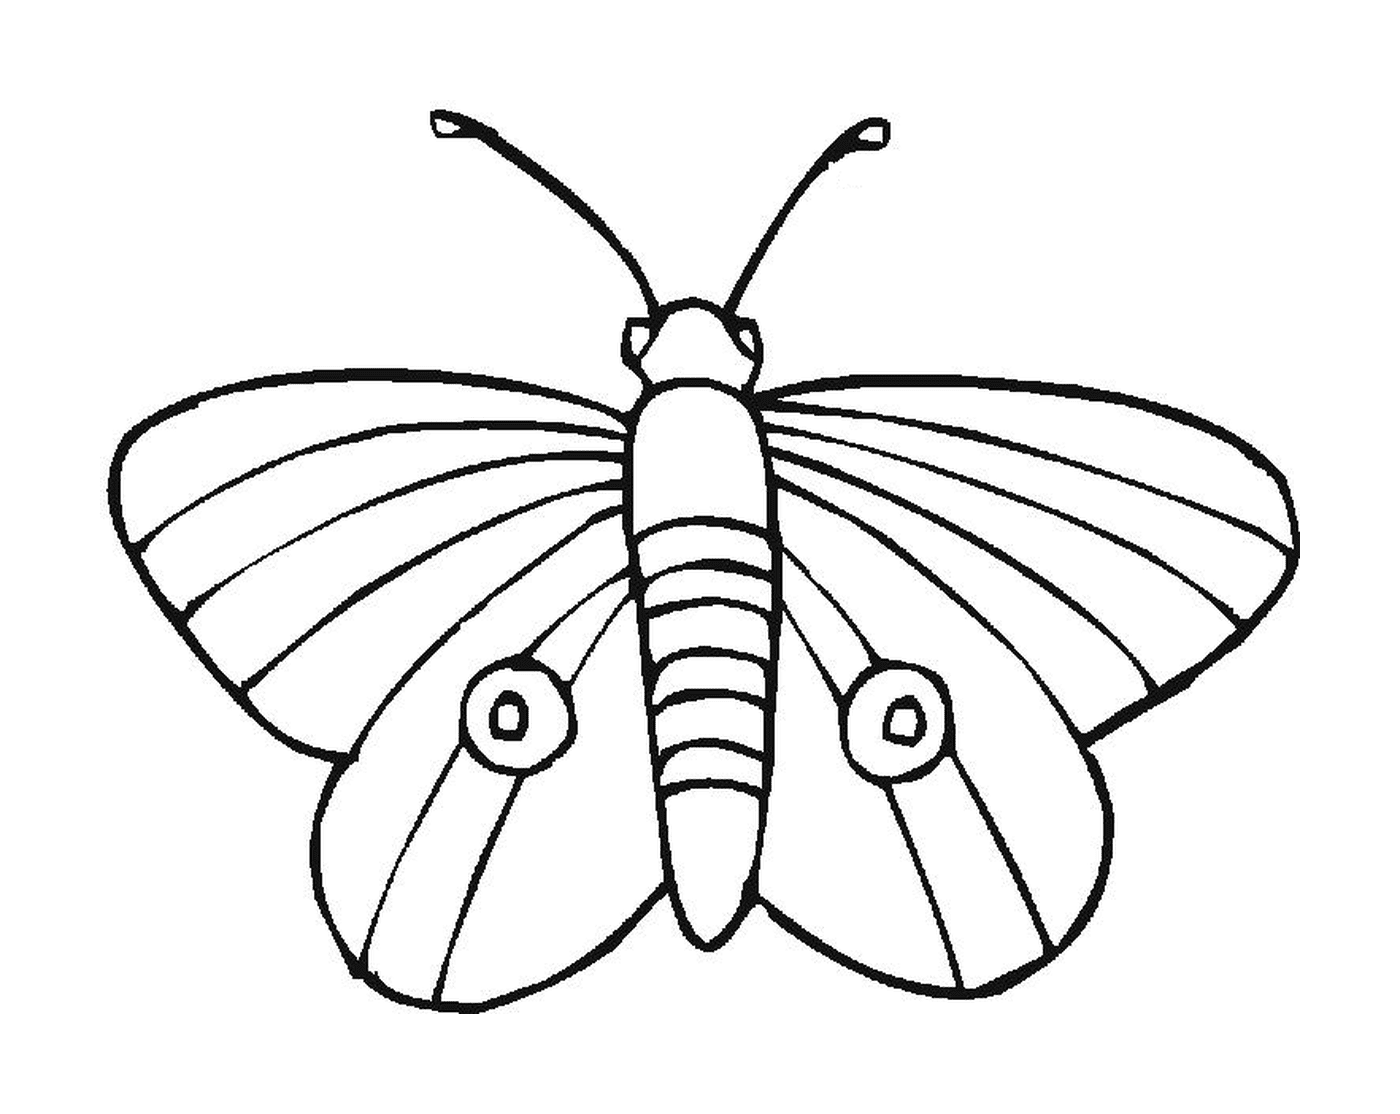  Mariposa delicada con patrones únicos 